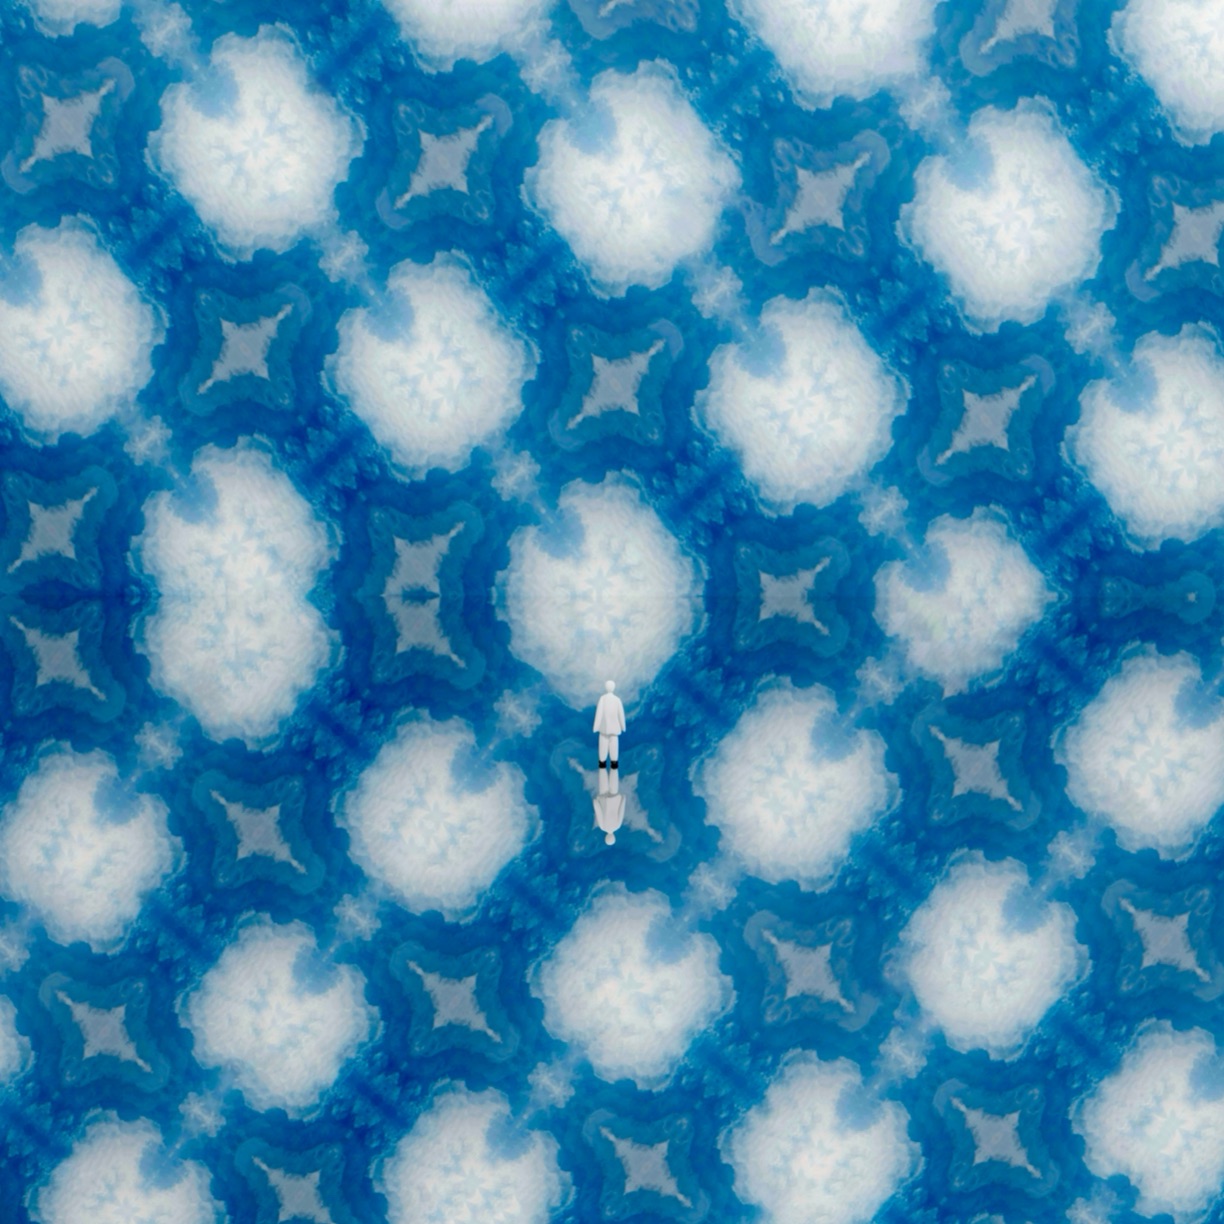 Atsushigraphのデジタルアート作品「Cloud Pocket」の画像です。